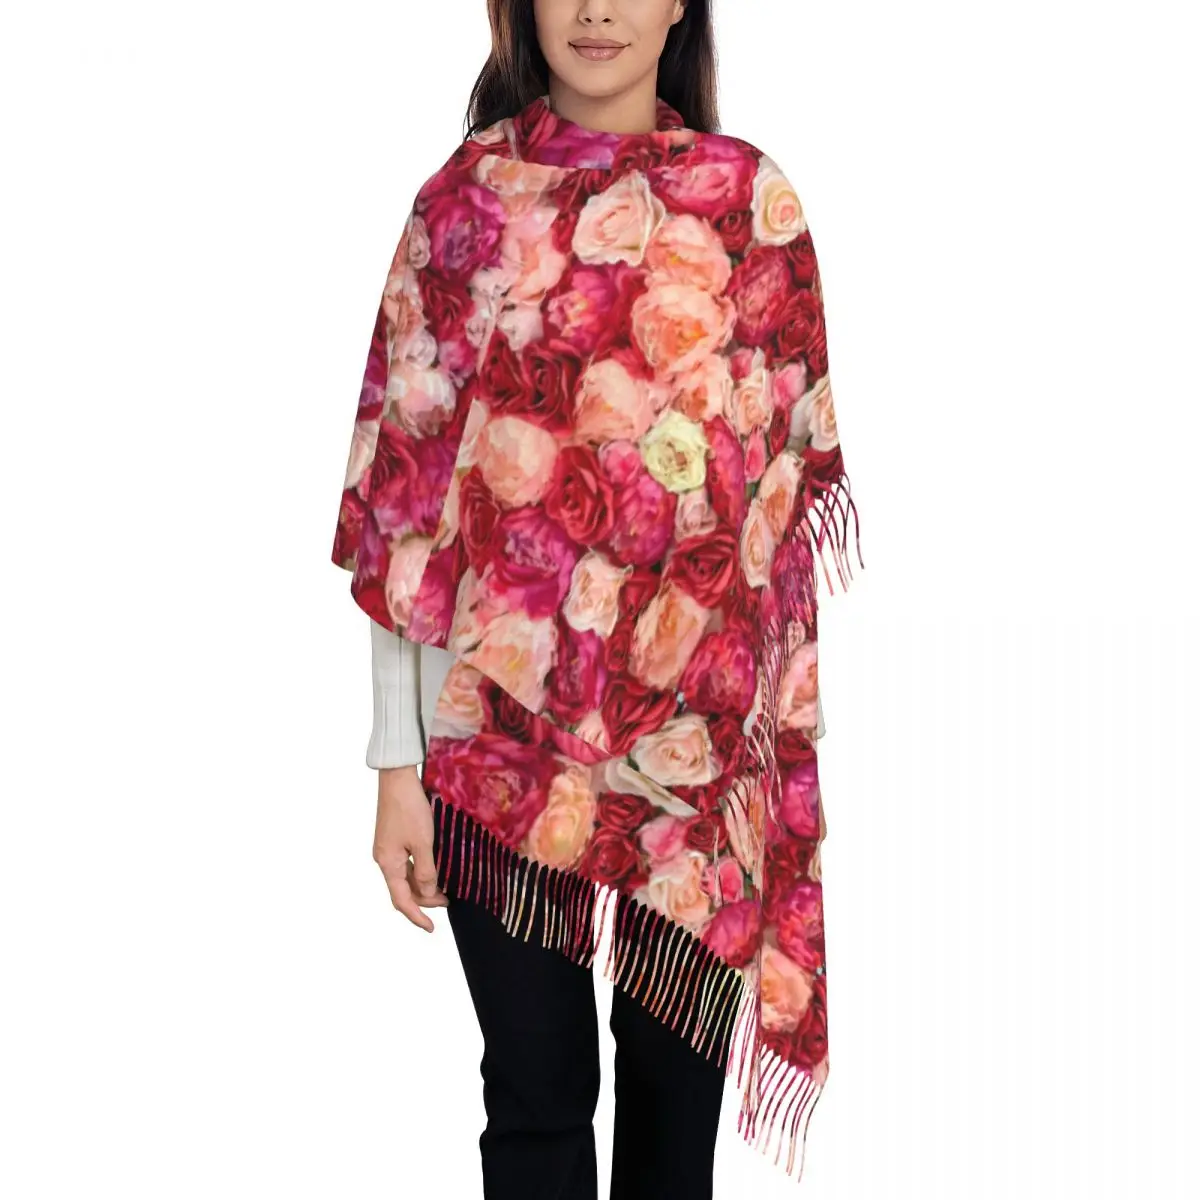 

Теплый мягкий шарф, зимний яркий цвет, дизайнерский женский роскошный брендовый большой шарф с белыми и розовыми цветами